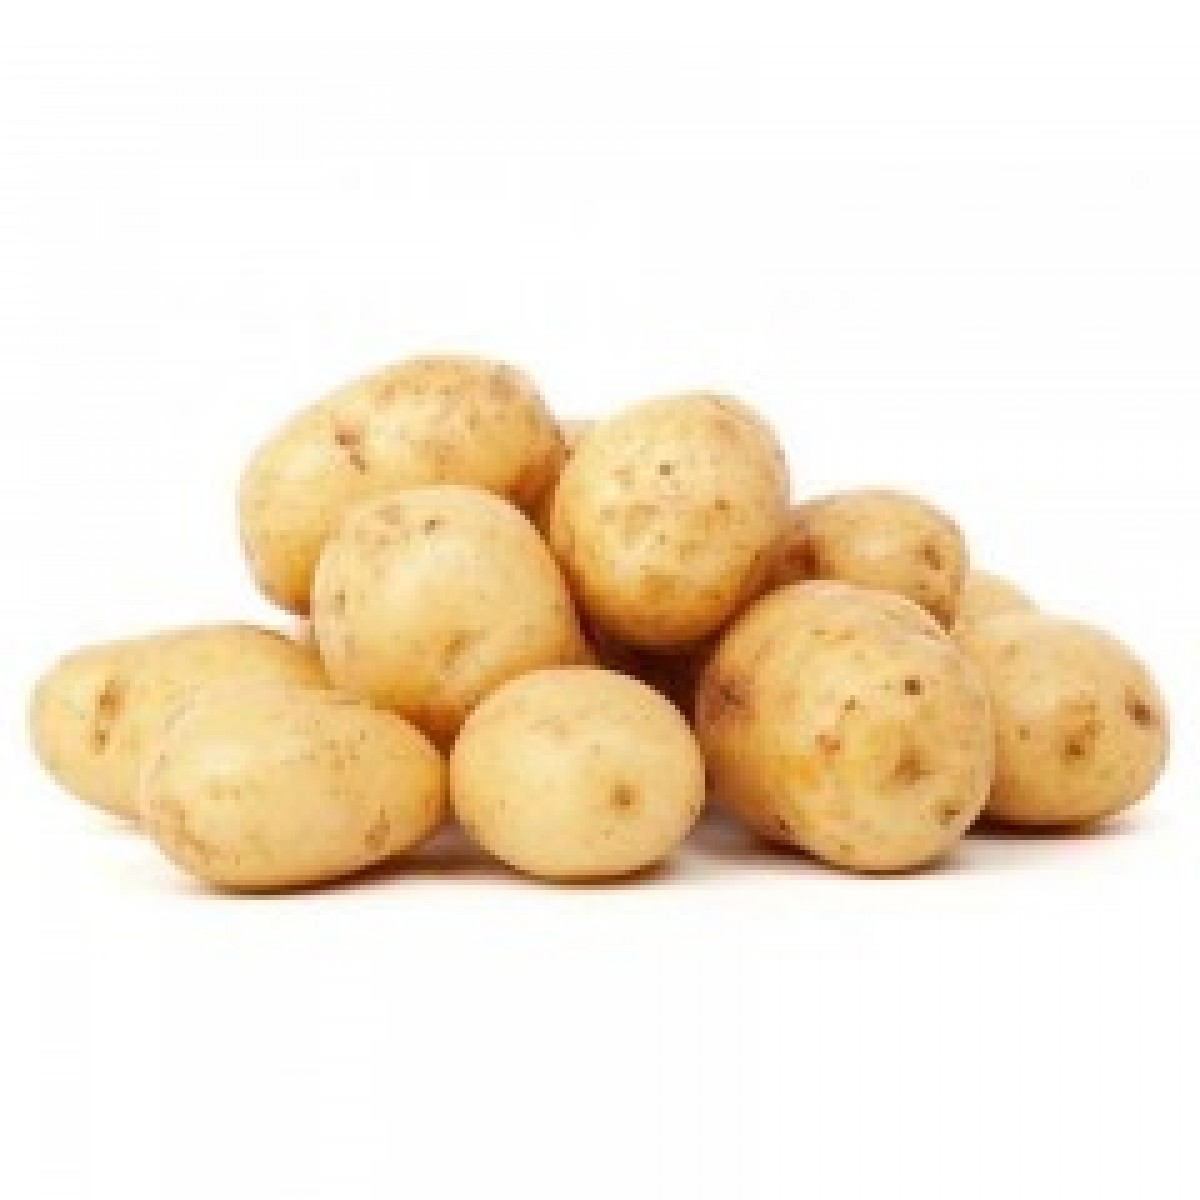 【鸡鲜森】土豆5斤装农田自种直发特产马铃薯 黄皮洋芋新鲜蔬菜包邮   29.9